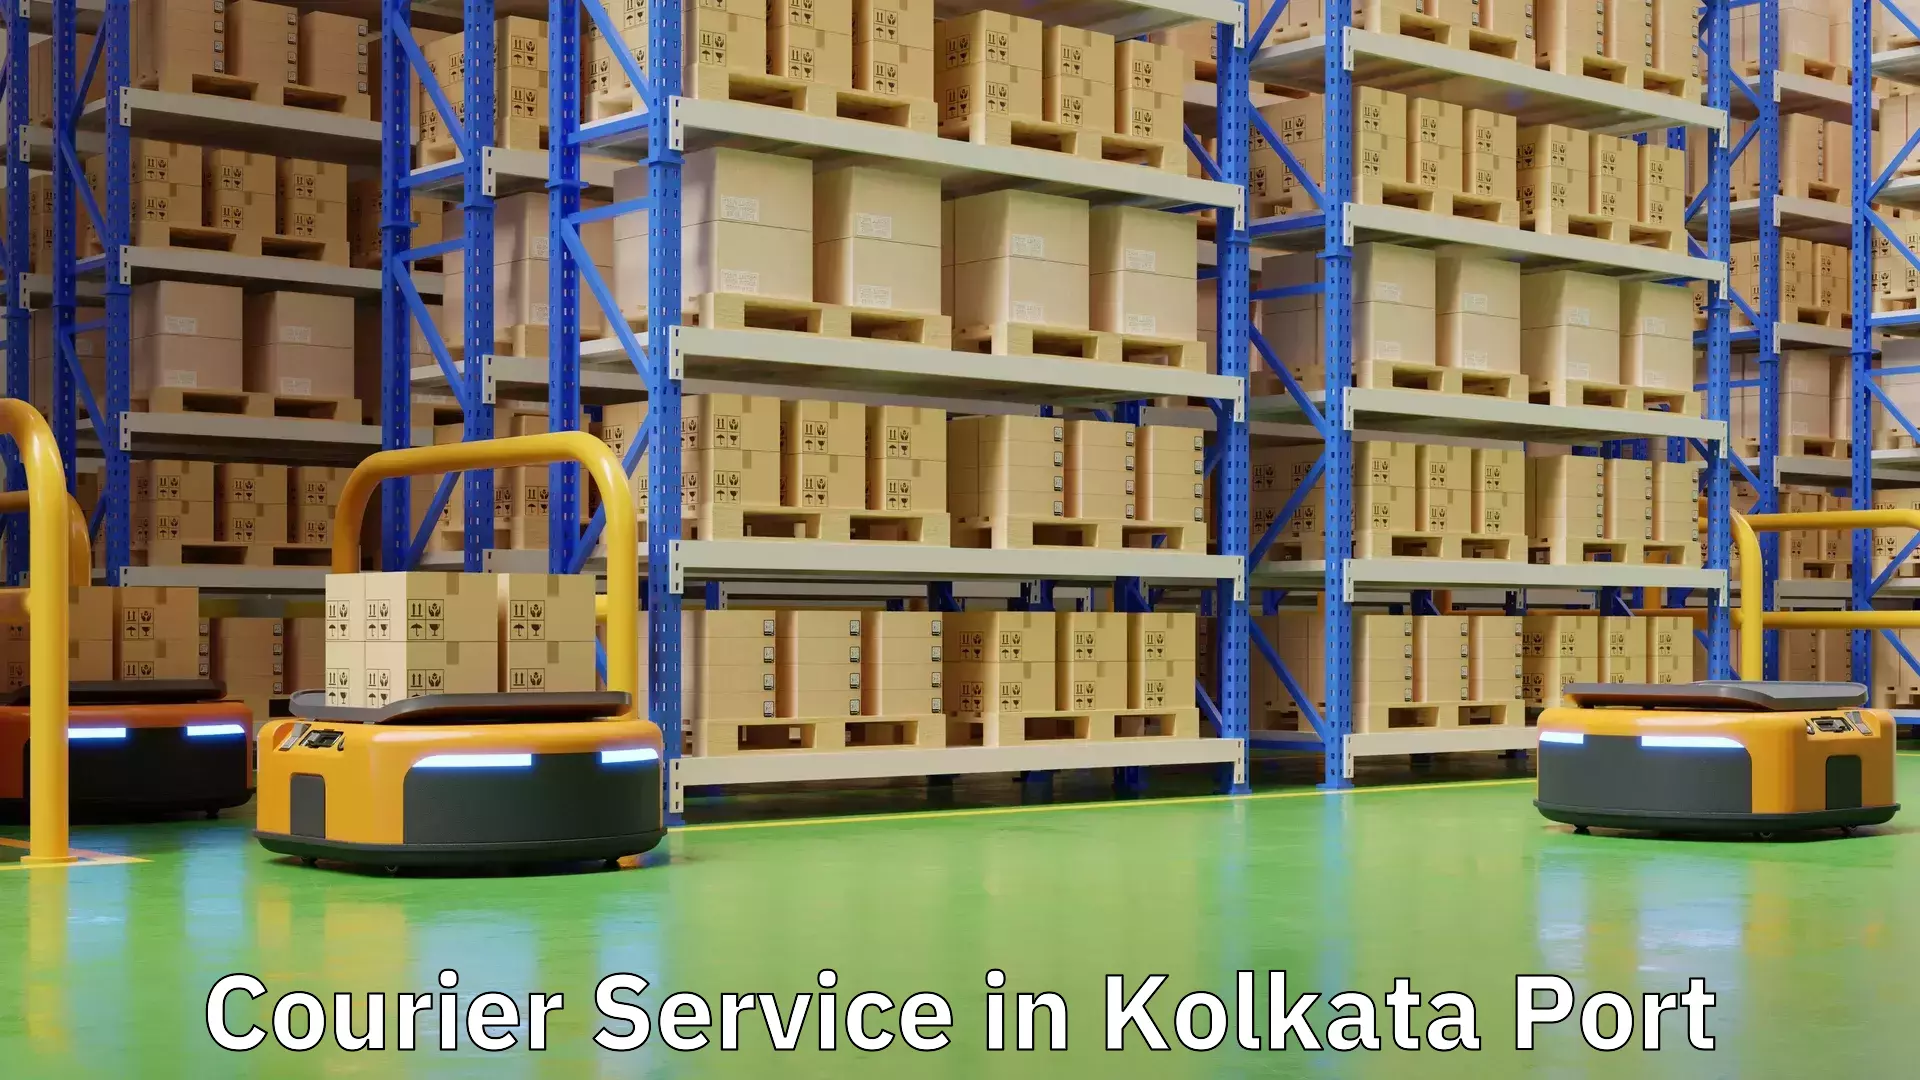 High-priority parcel service in Kolkata Port